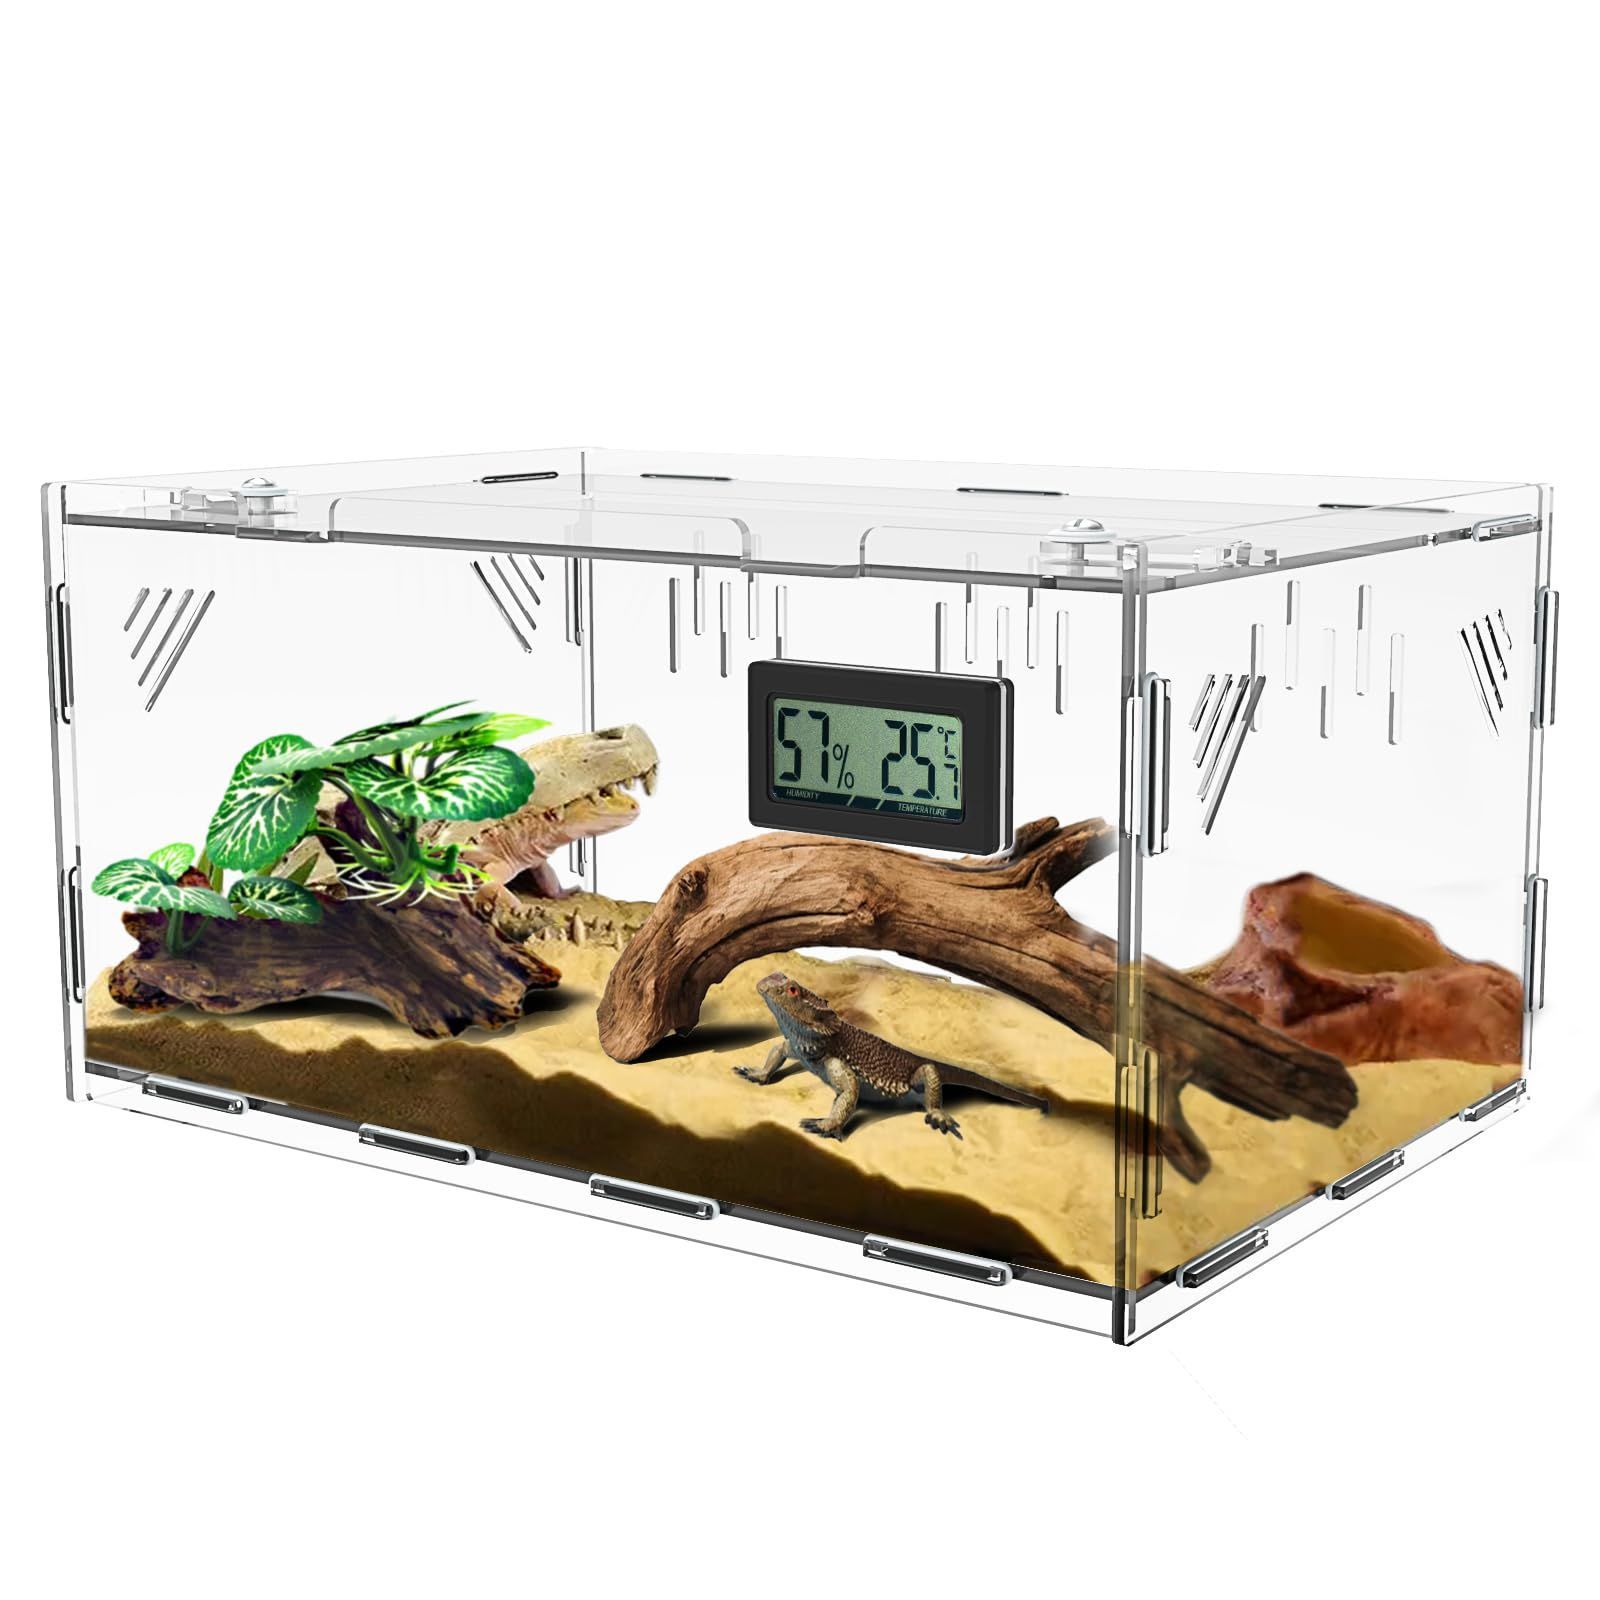 40 * 25 * 18cm トカゲ ケージ 爬虫類 ケージ 爬虫類 飼育ケース 温度 